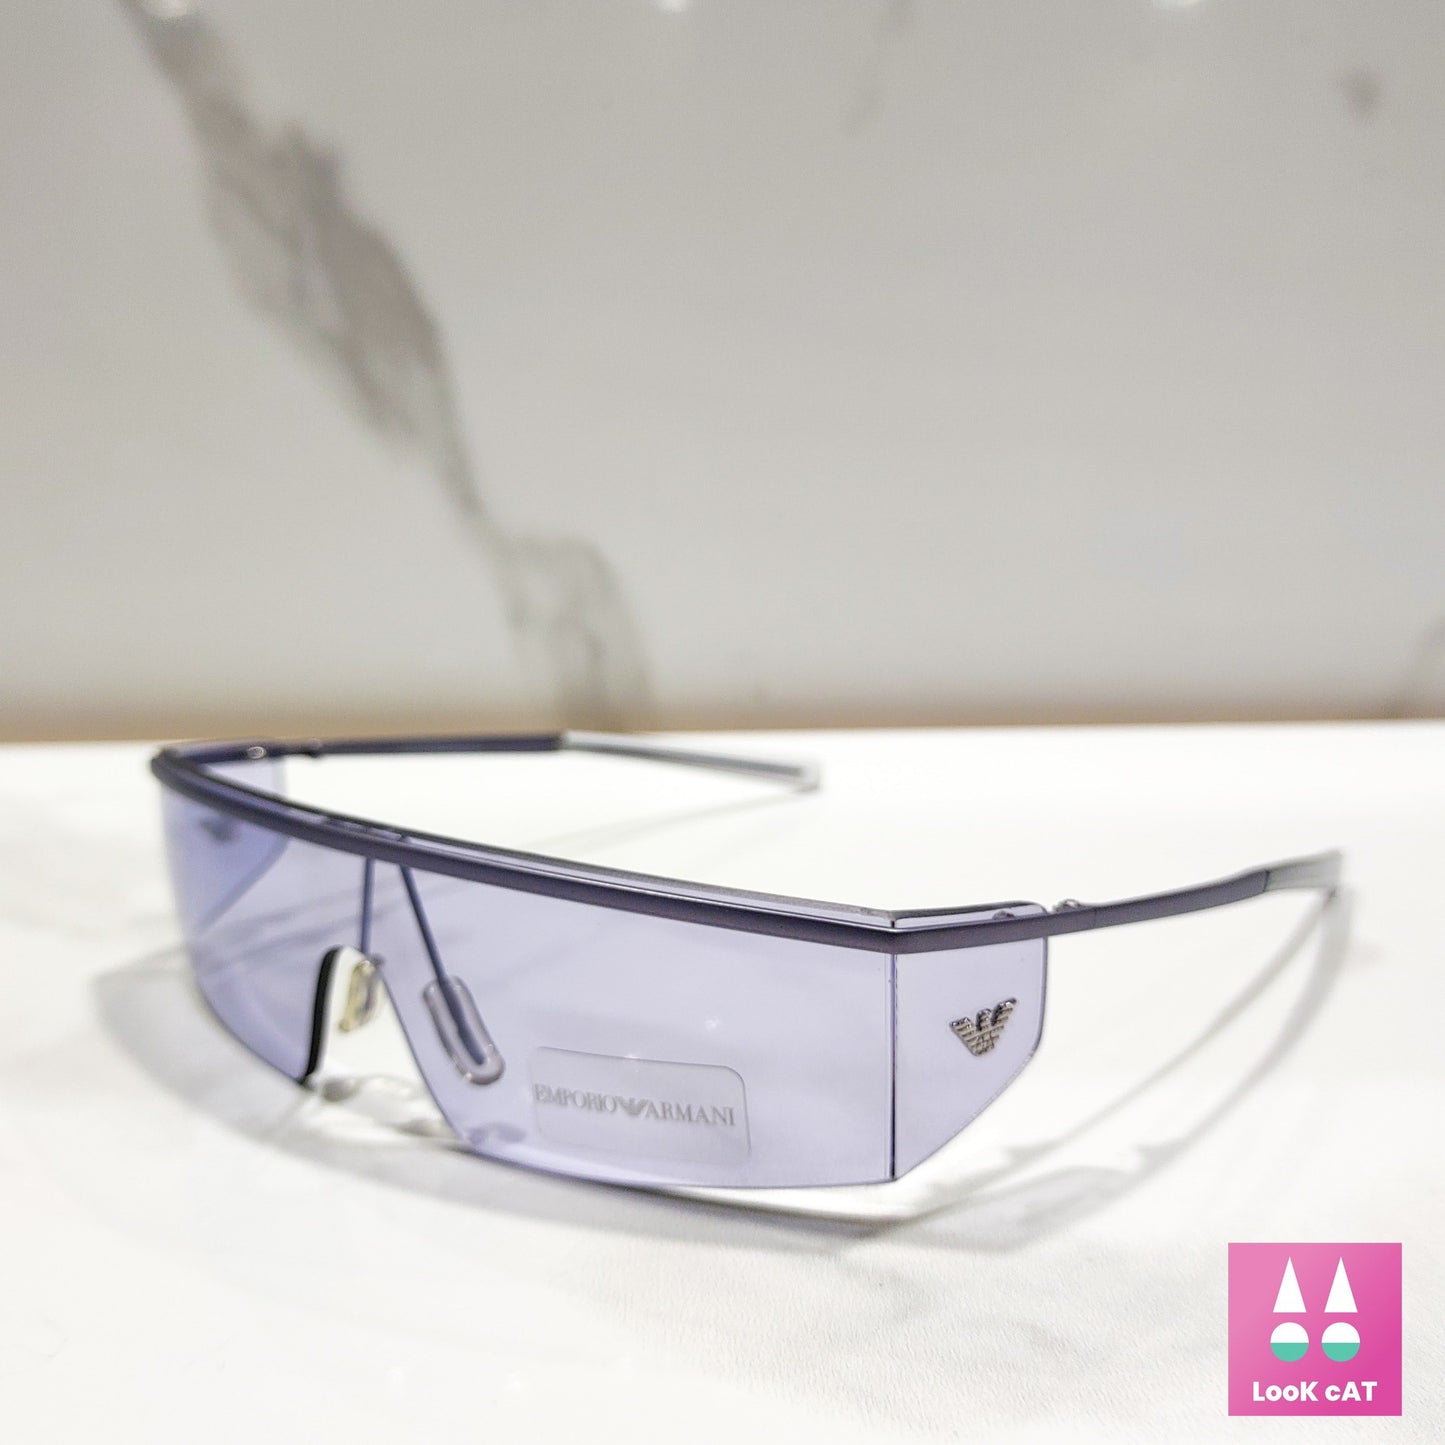 Occhiali da sole Emporio Armani 9033 a scudo avvolgente lunetta brille y2k tonalità cyber